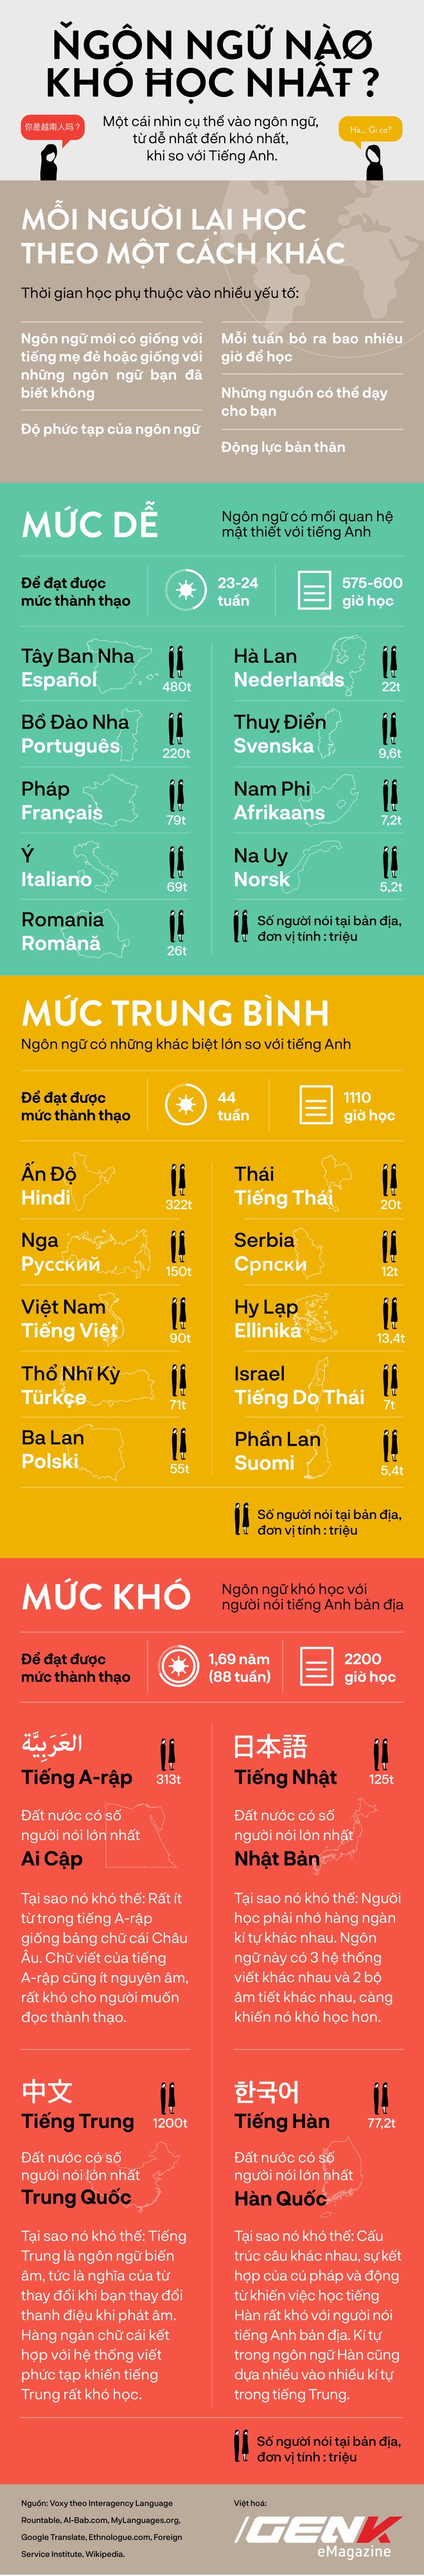 [Infographic] Những ngôn ngữ khó học nhất thế giới, xem để biết tiếng Việt đứng ở vị trí nào - Ảnh 2.